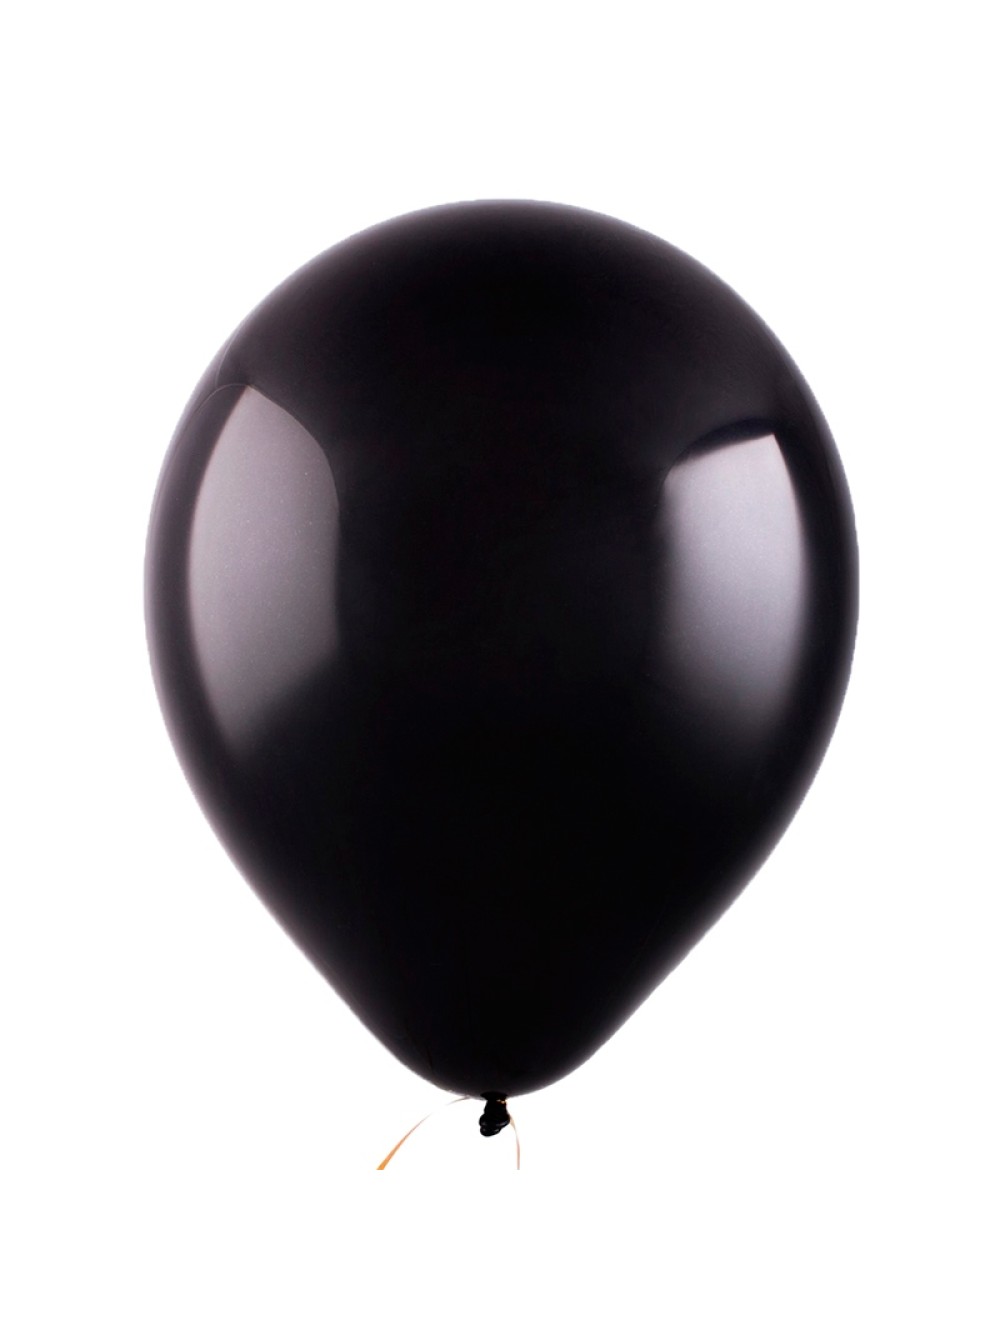 Черный воздушный шарик. Шар черный декоратор / Black 048. 12" Черный шар пастель компании Веселуха. Шар черный латексный. Черные шары пастель.